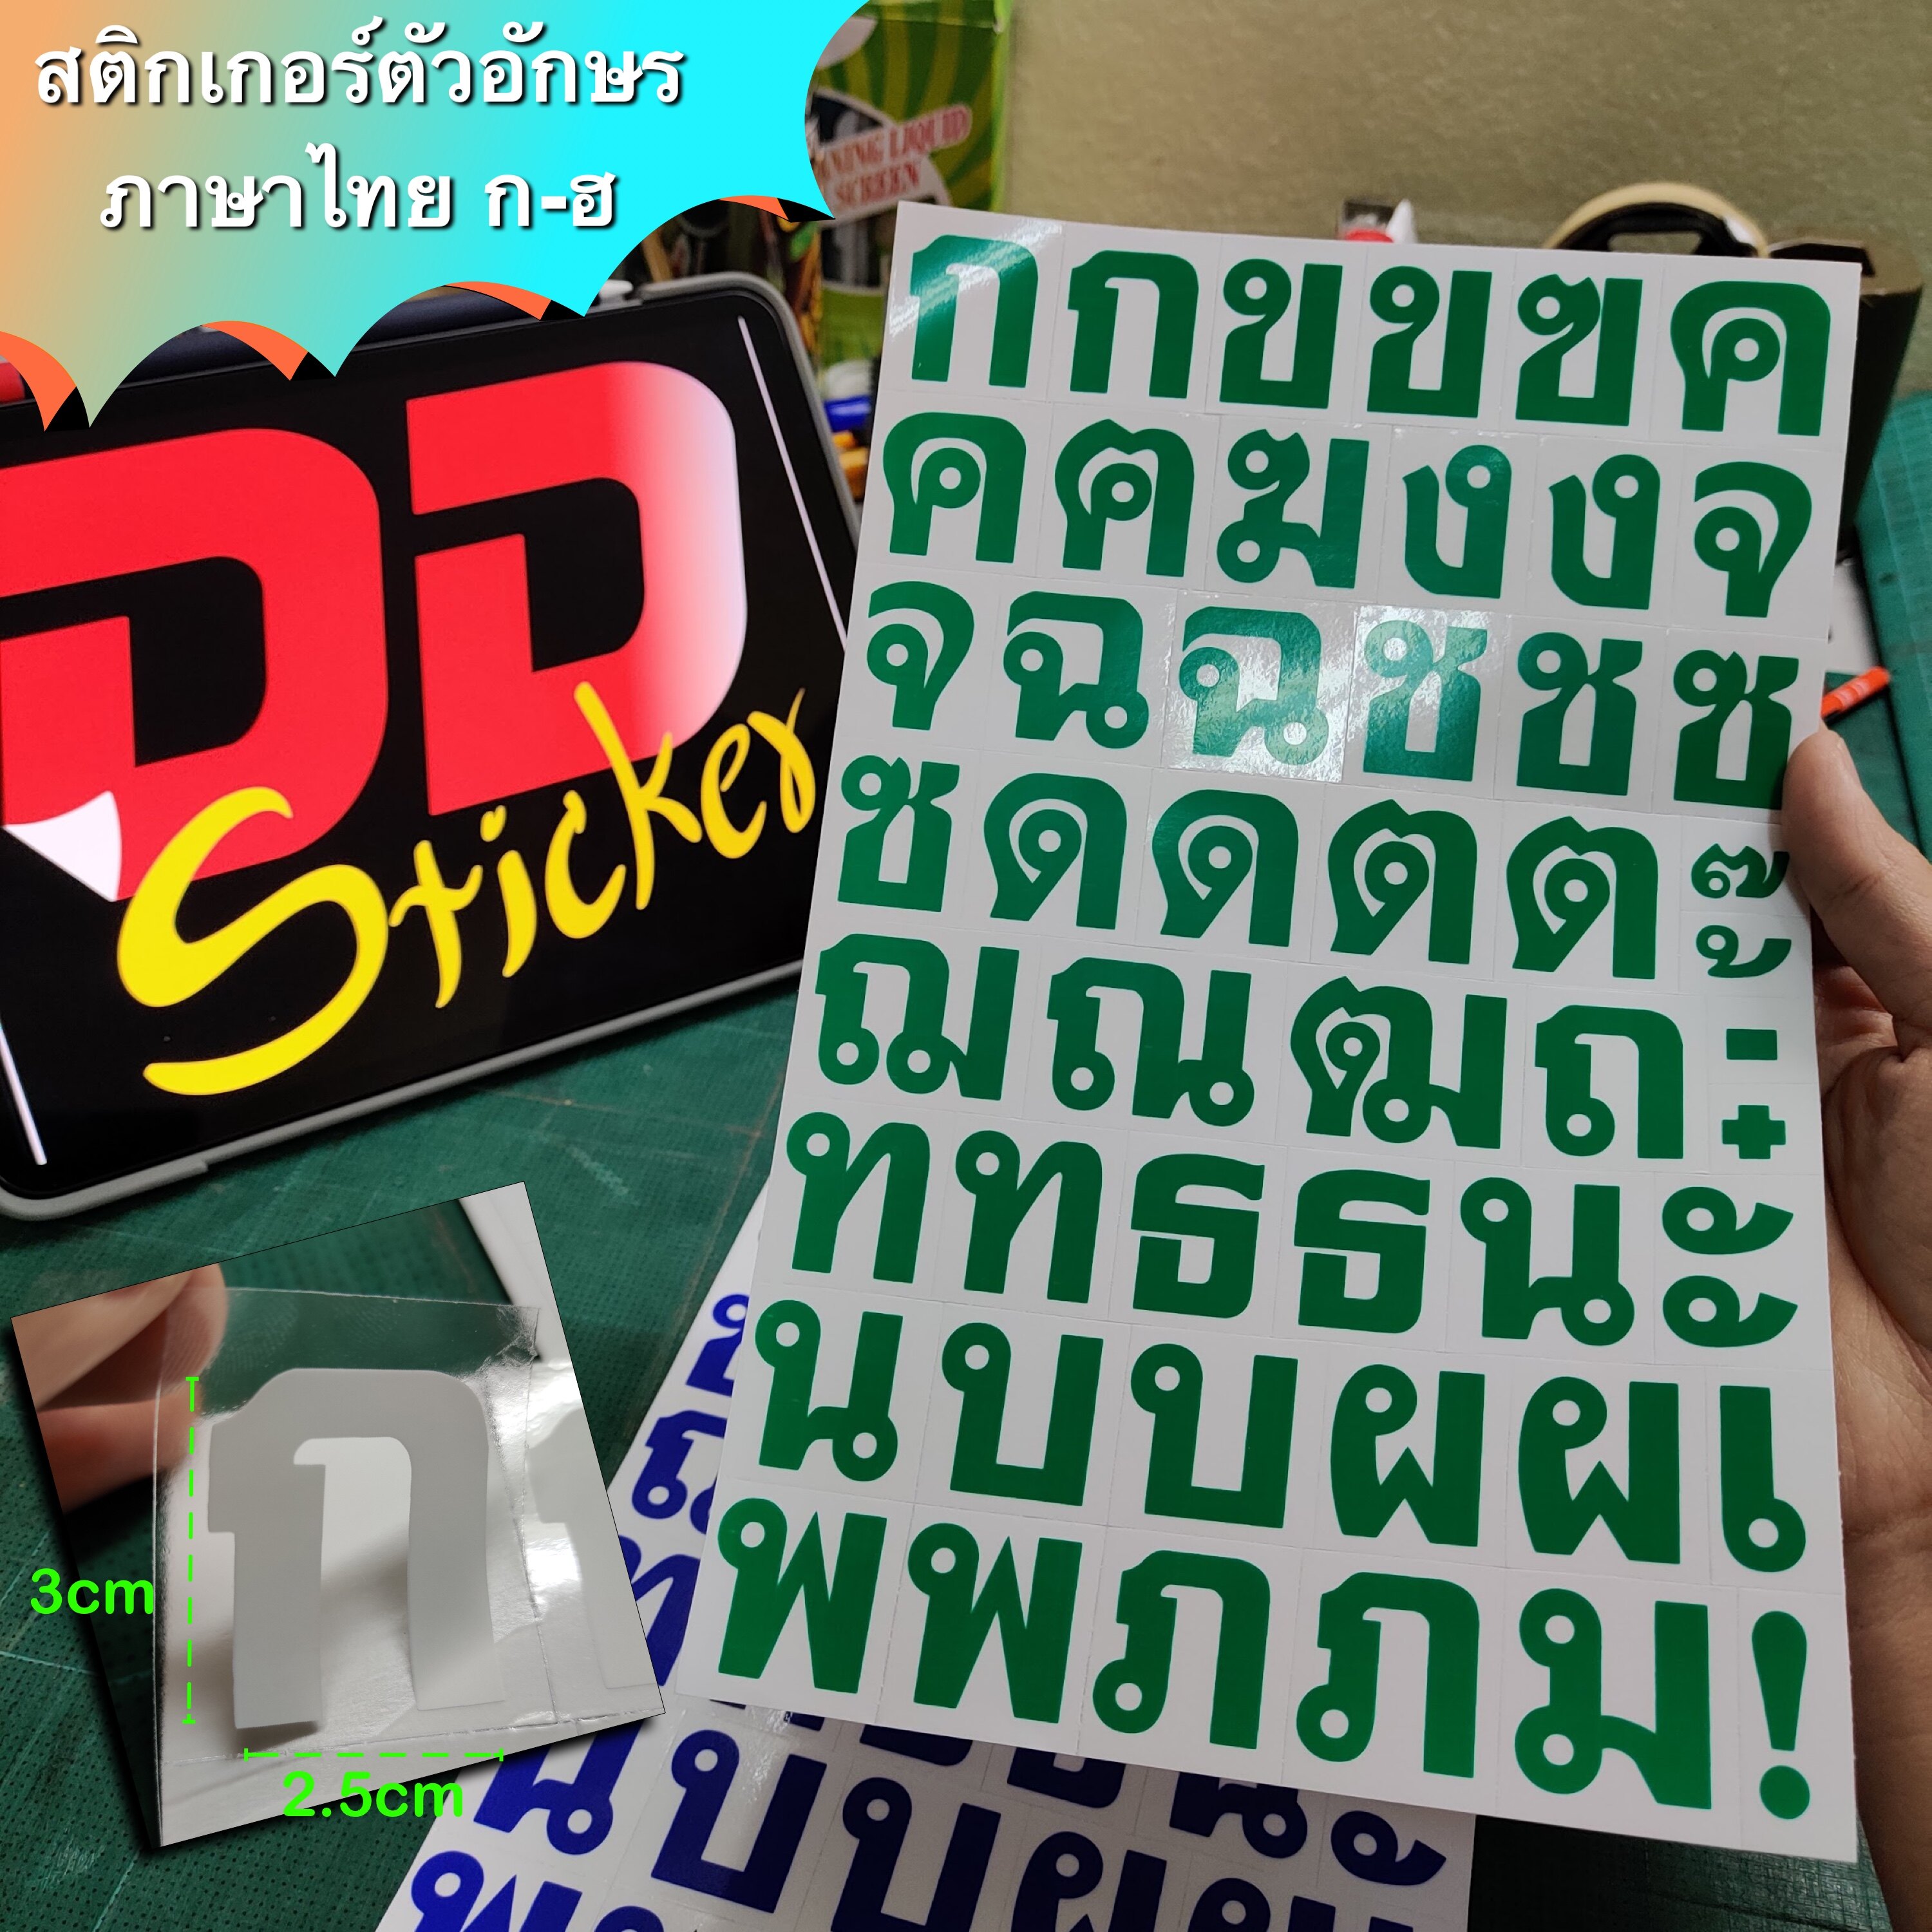 สติ๊กเกอร์ตัวหนังสือภาษาไทย สติ๊กเกอร์ตัวอักษรภาษาไทย พื้นใส หนึ่งชุดมี 2 แผ่น มี 7 สีให้เลือก ขนาดตัวอักษร 2.5x3cm